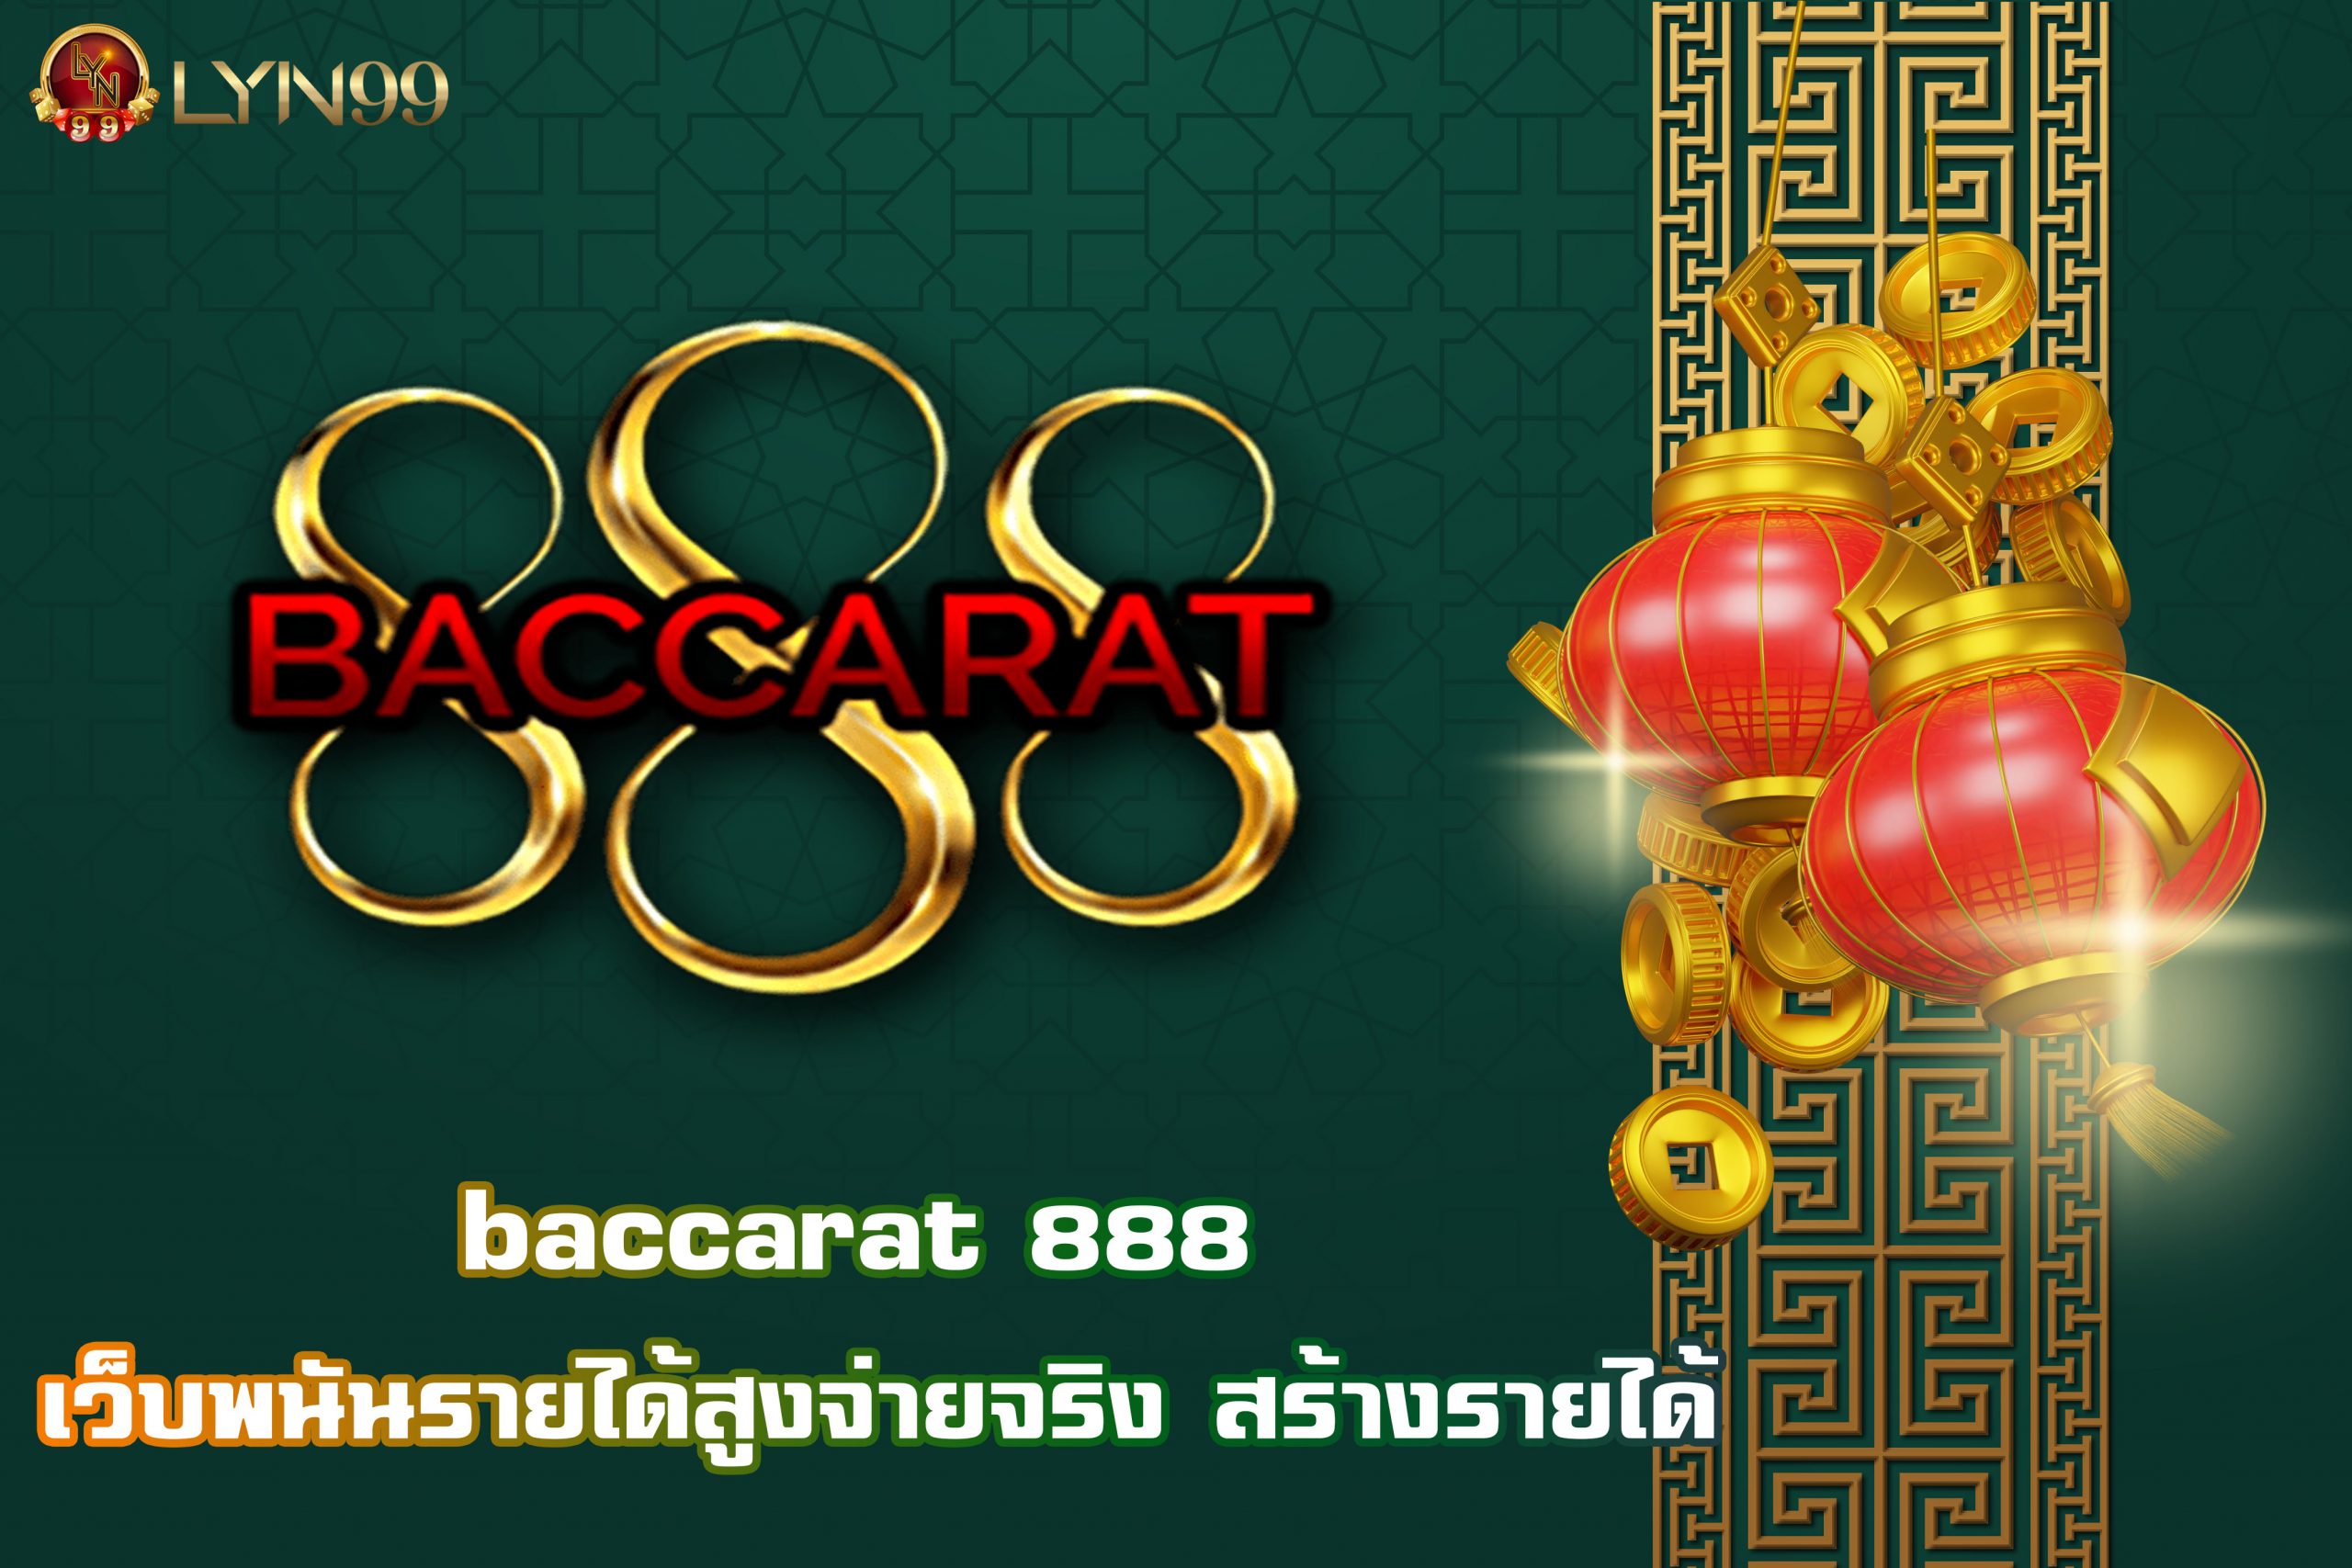 baccarat 888 เว็บพนันรายได้สูงจ่ายจริง สร้างรายได้